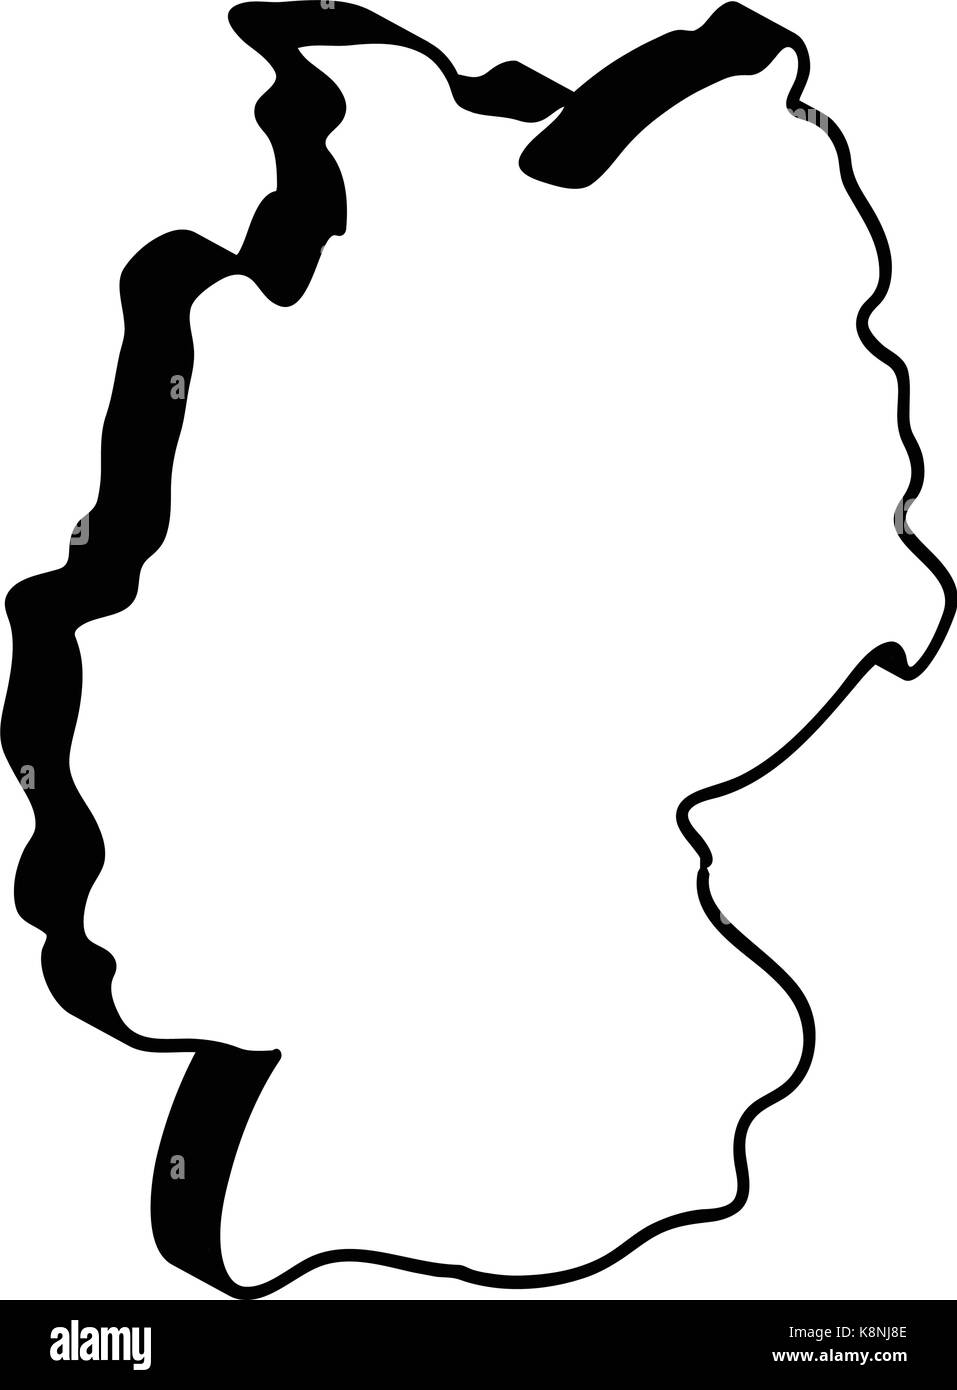 Deutschland Karte Vektor symbol Icon Design. silhouette Abbildung auf weißem Hintergrund. Stock Vektor